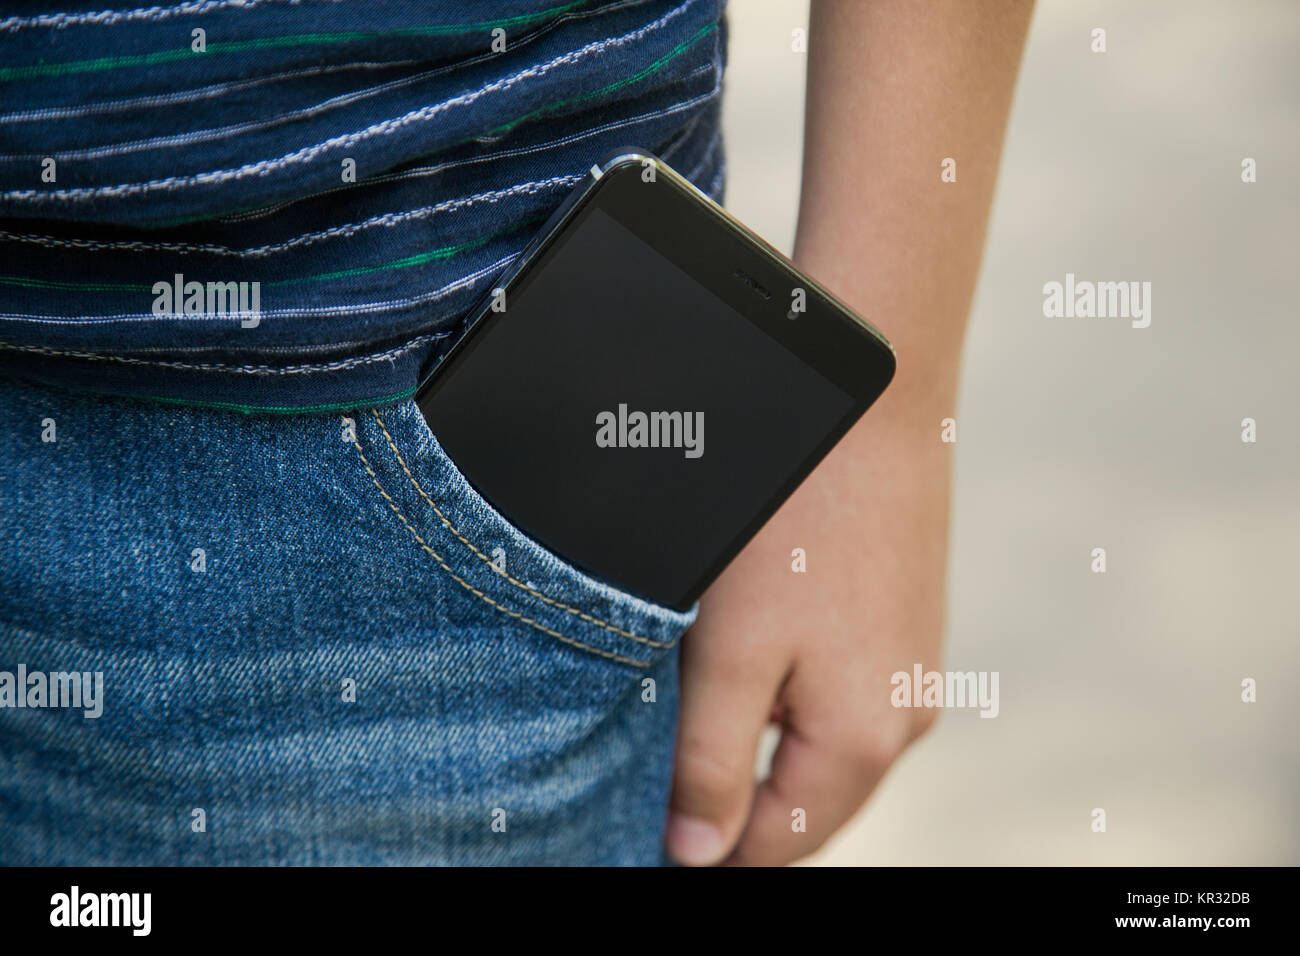 Detailansicht des modernen BlackBerry-Smartphone mit Touchscreen im Inneren der Tasche Blue Denim Jeans. Horizontale Color Foto. Stockfoto